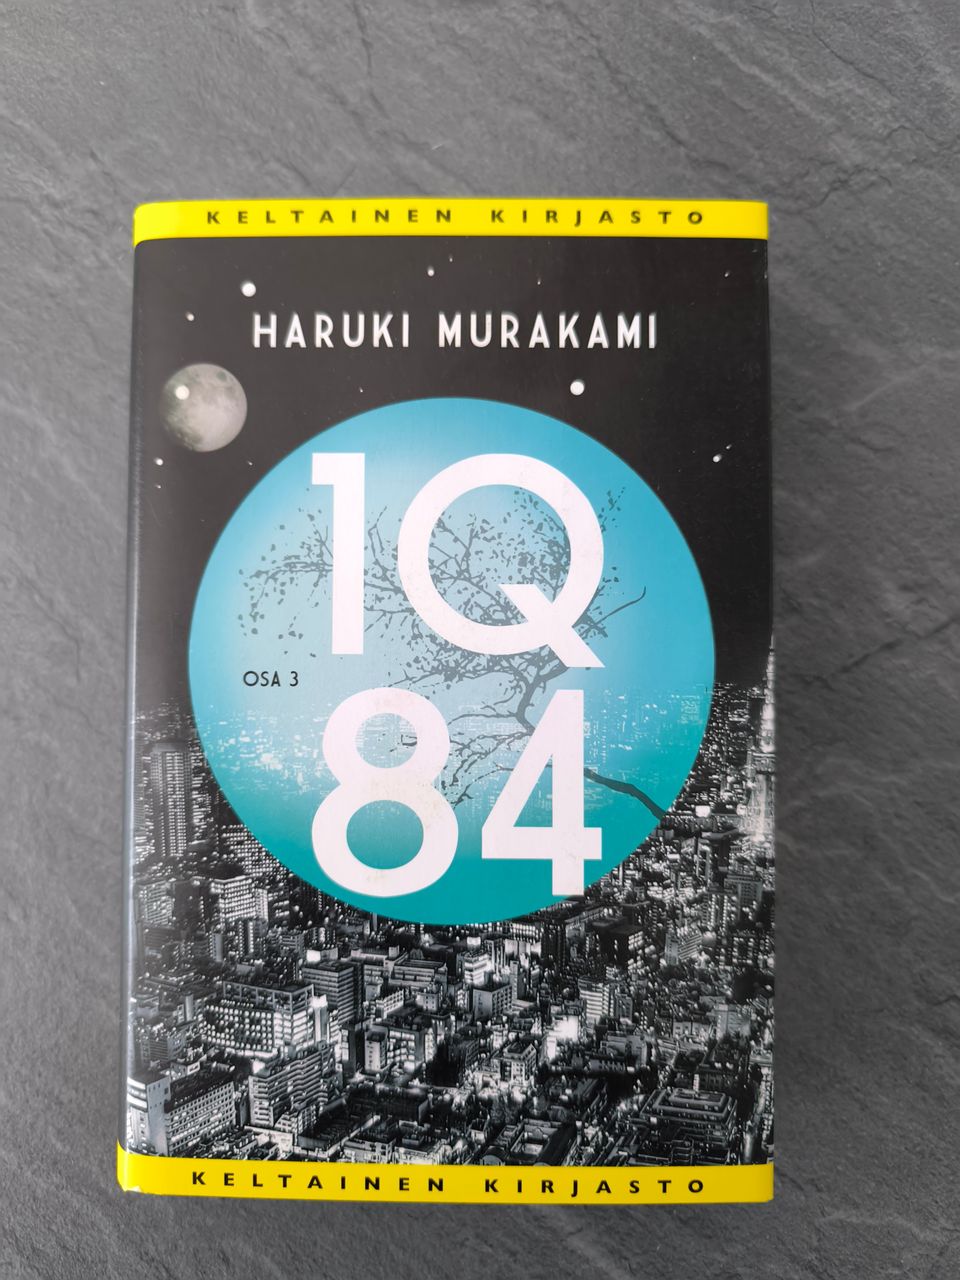 1Q84 - Haruki Murakami osa.3 päätösosa